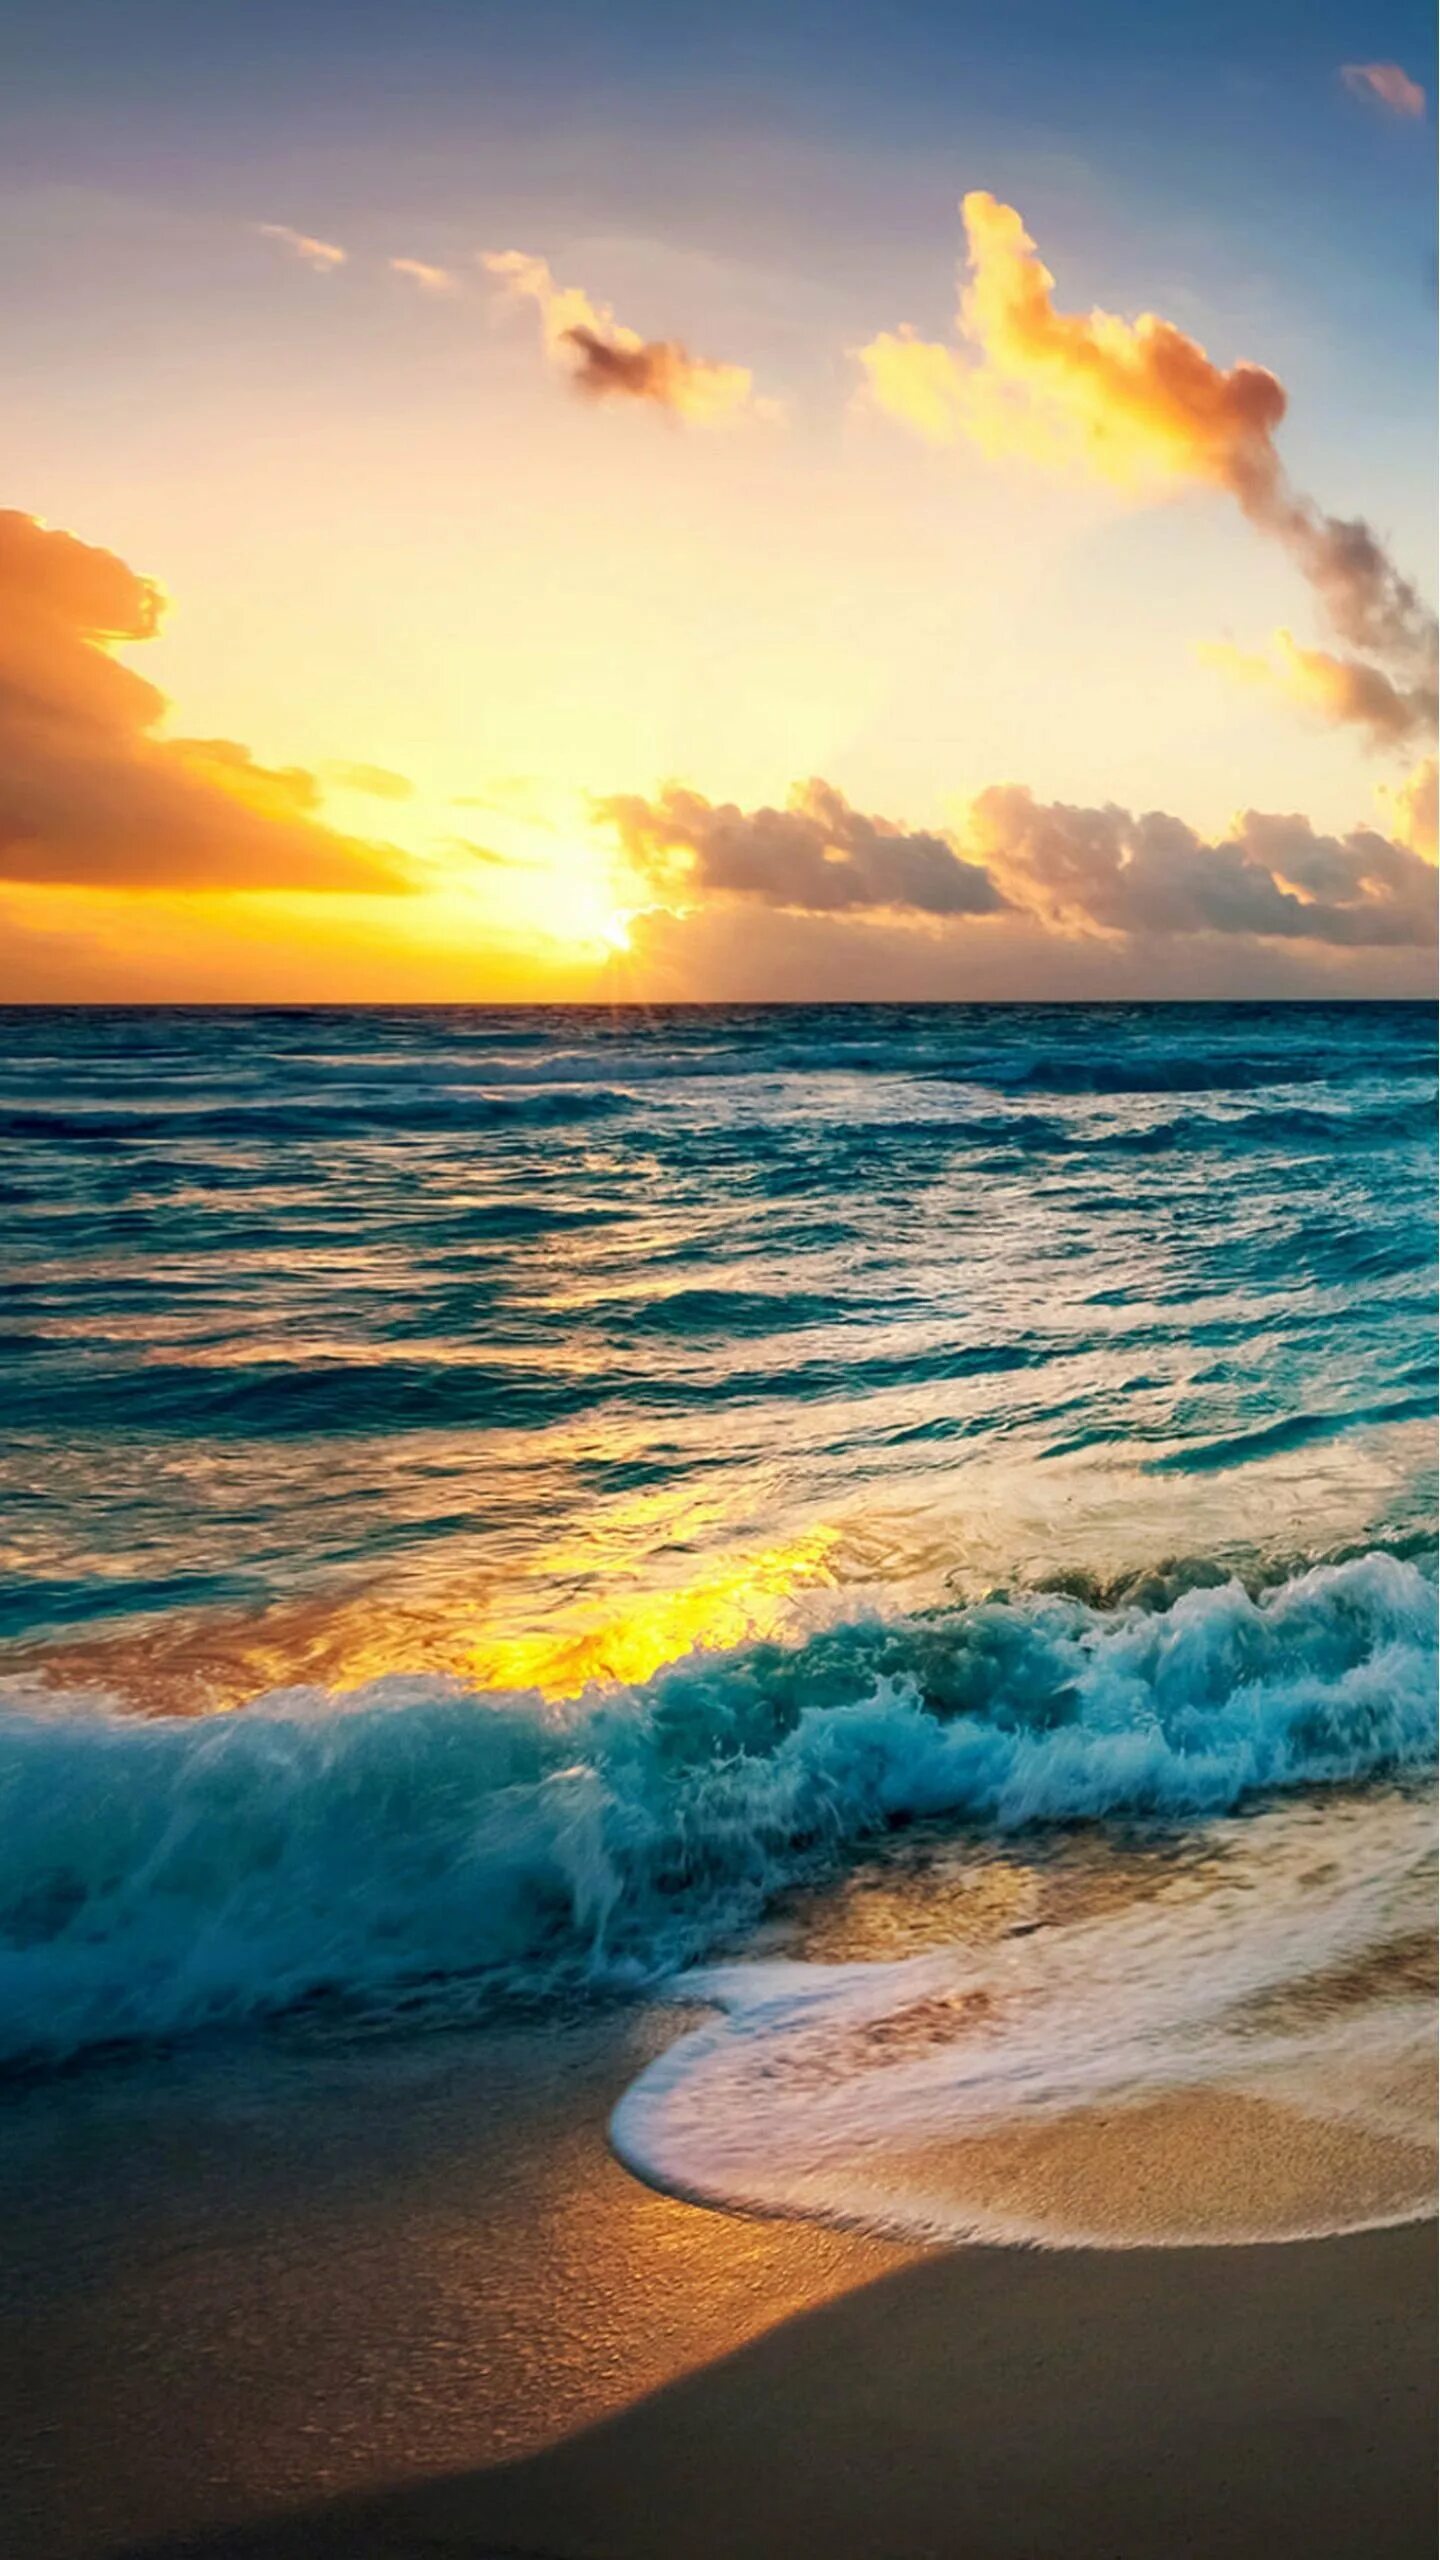 Природа море. Природа моие. Океан солнце пляж. Пейзаж море. Вацап морской